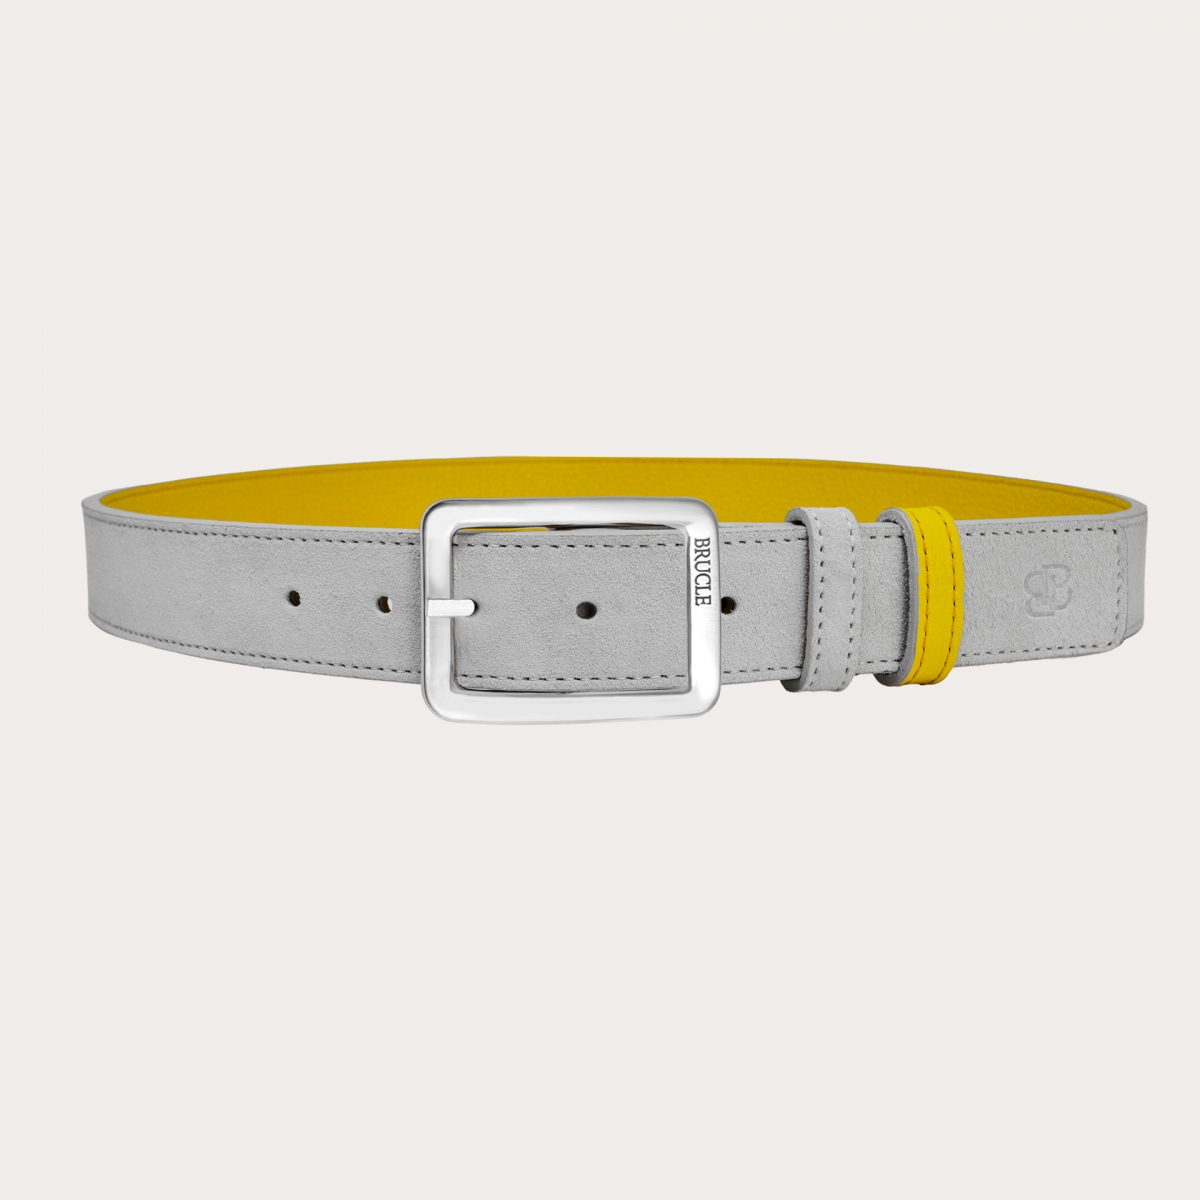 Cinturón reversible en ante gris ceniza y piel abatanada amarillo